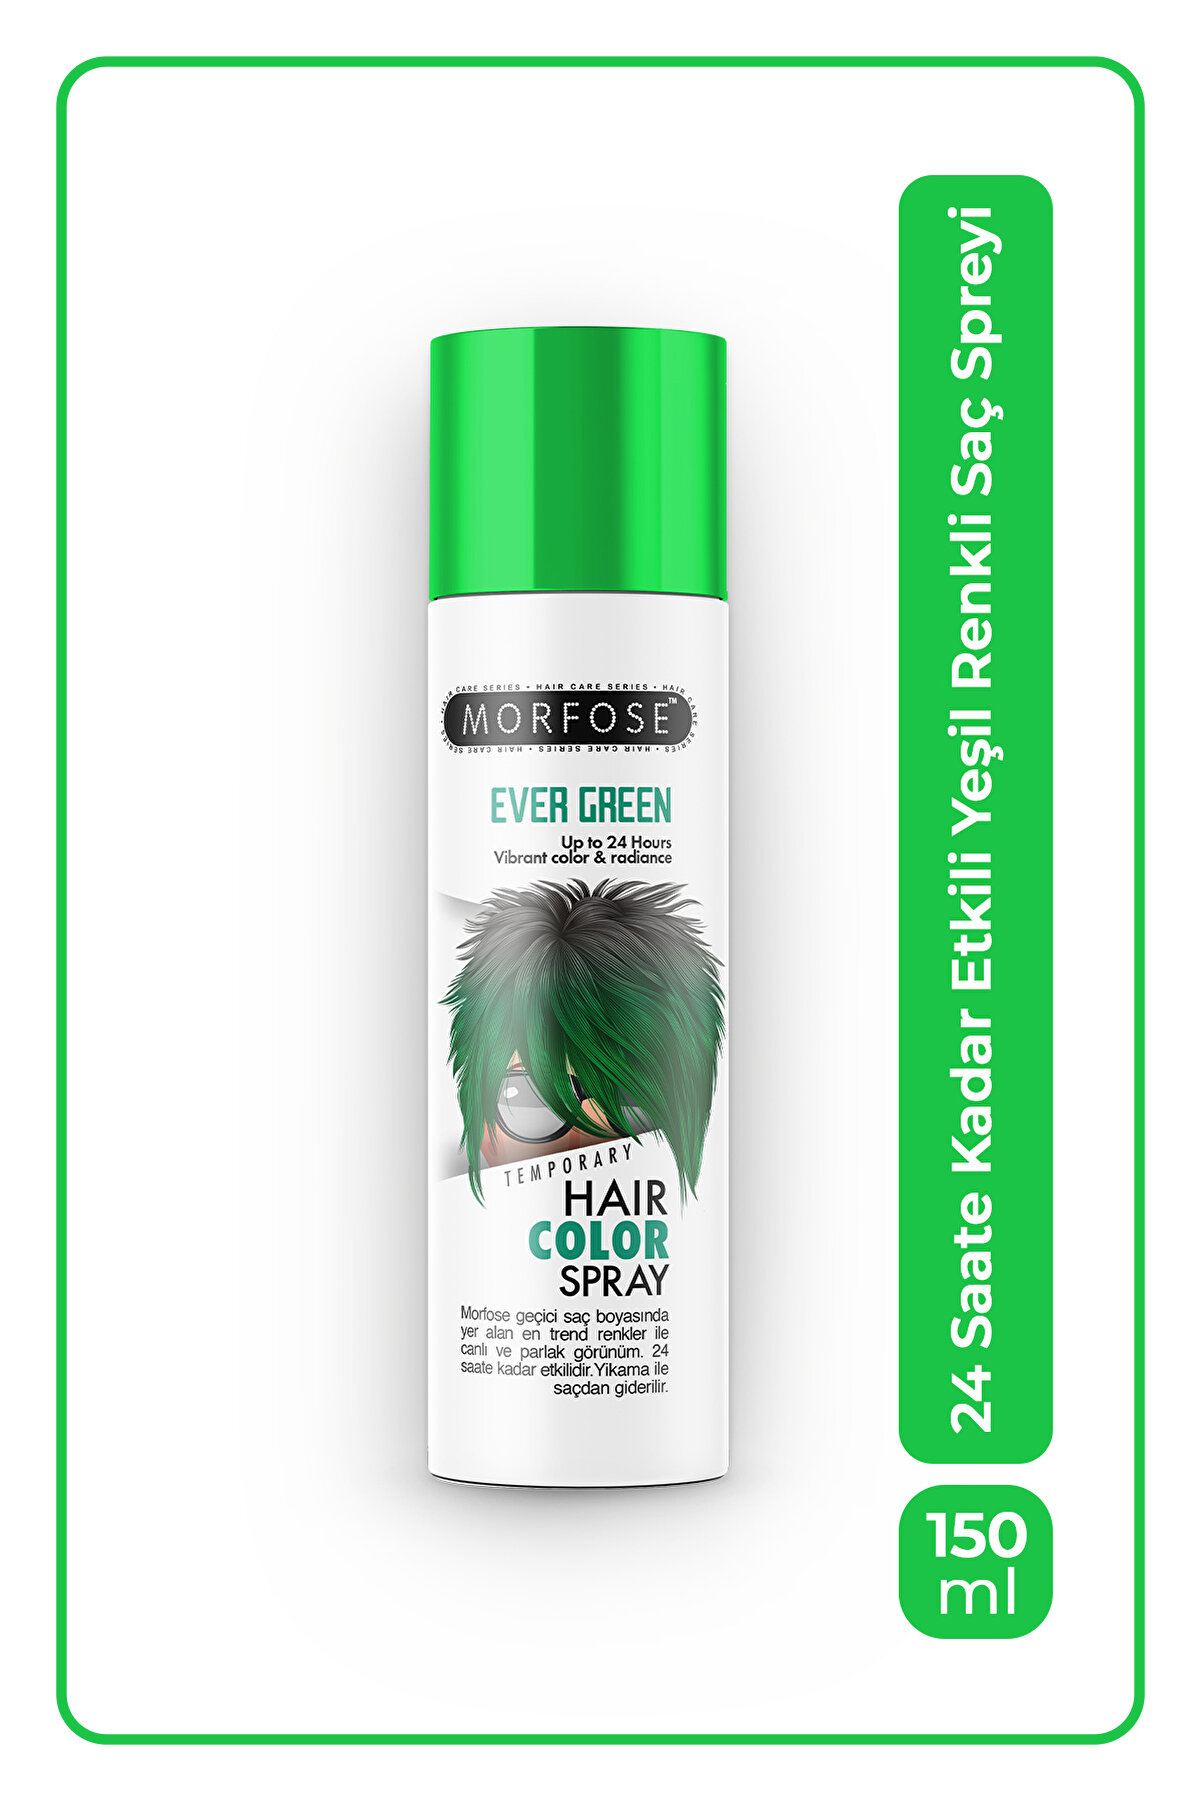 Morfose Mech 24 Saate Kadar Etkili Yeşil Renkli Saç Spreyi Ever Green 150 ml